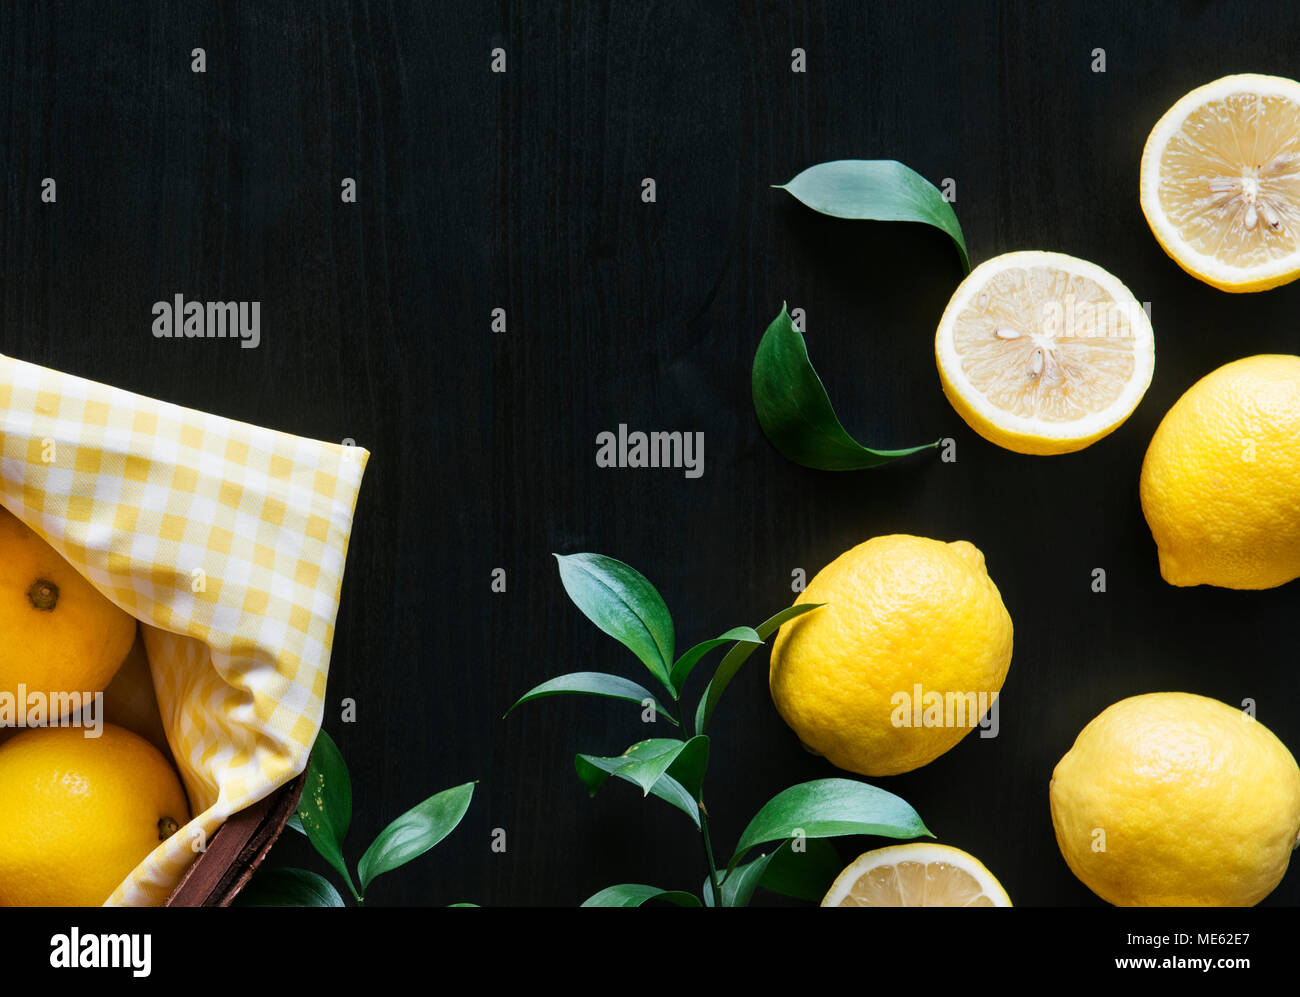 Fresh yellow lemons on black background Stock Photo